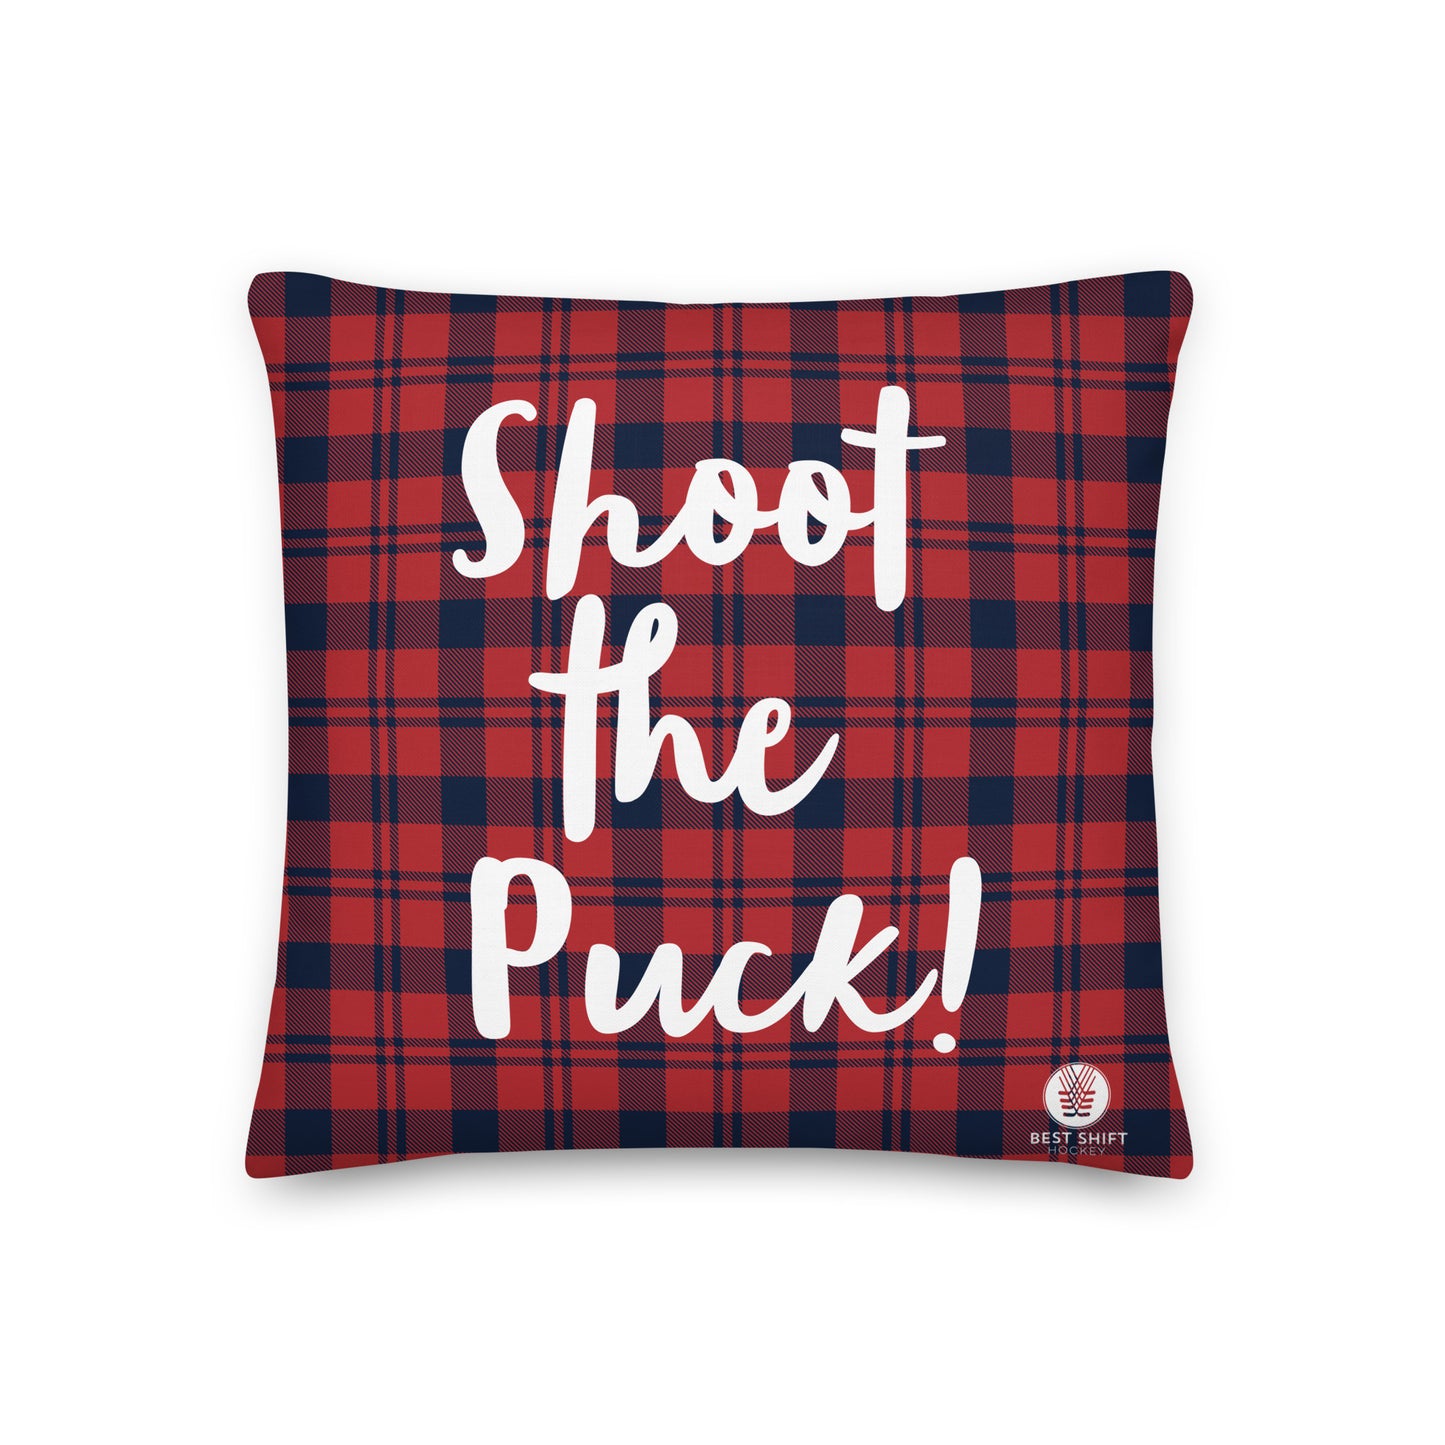 Shoot the Puck Pillow